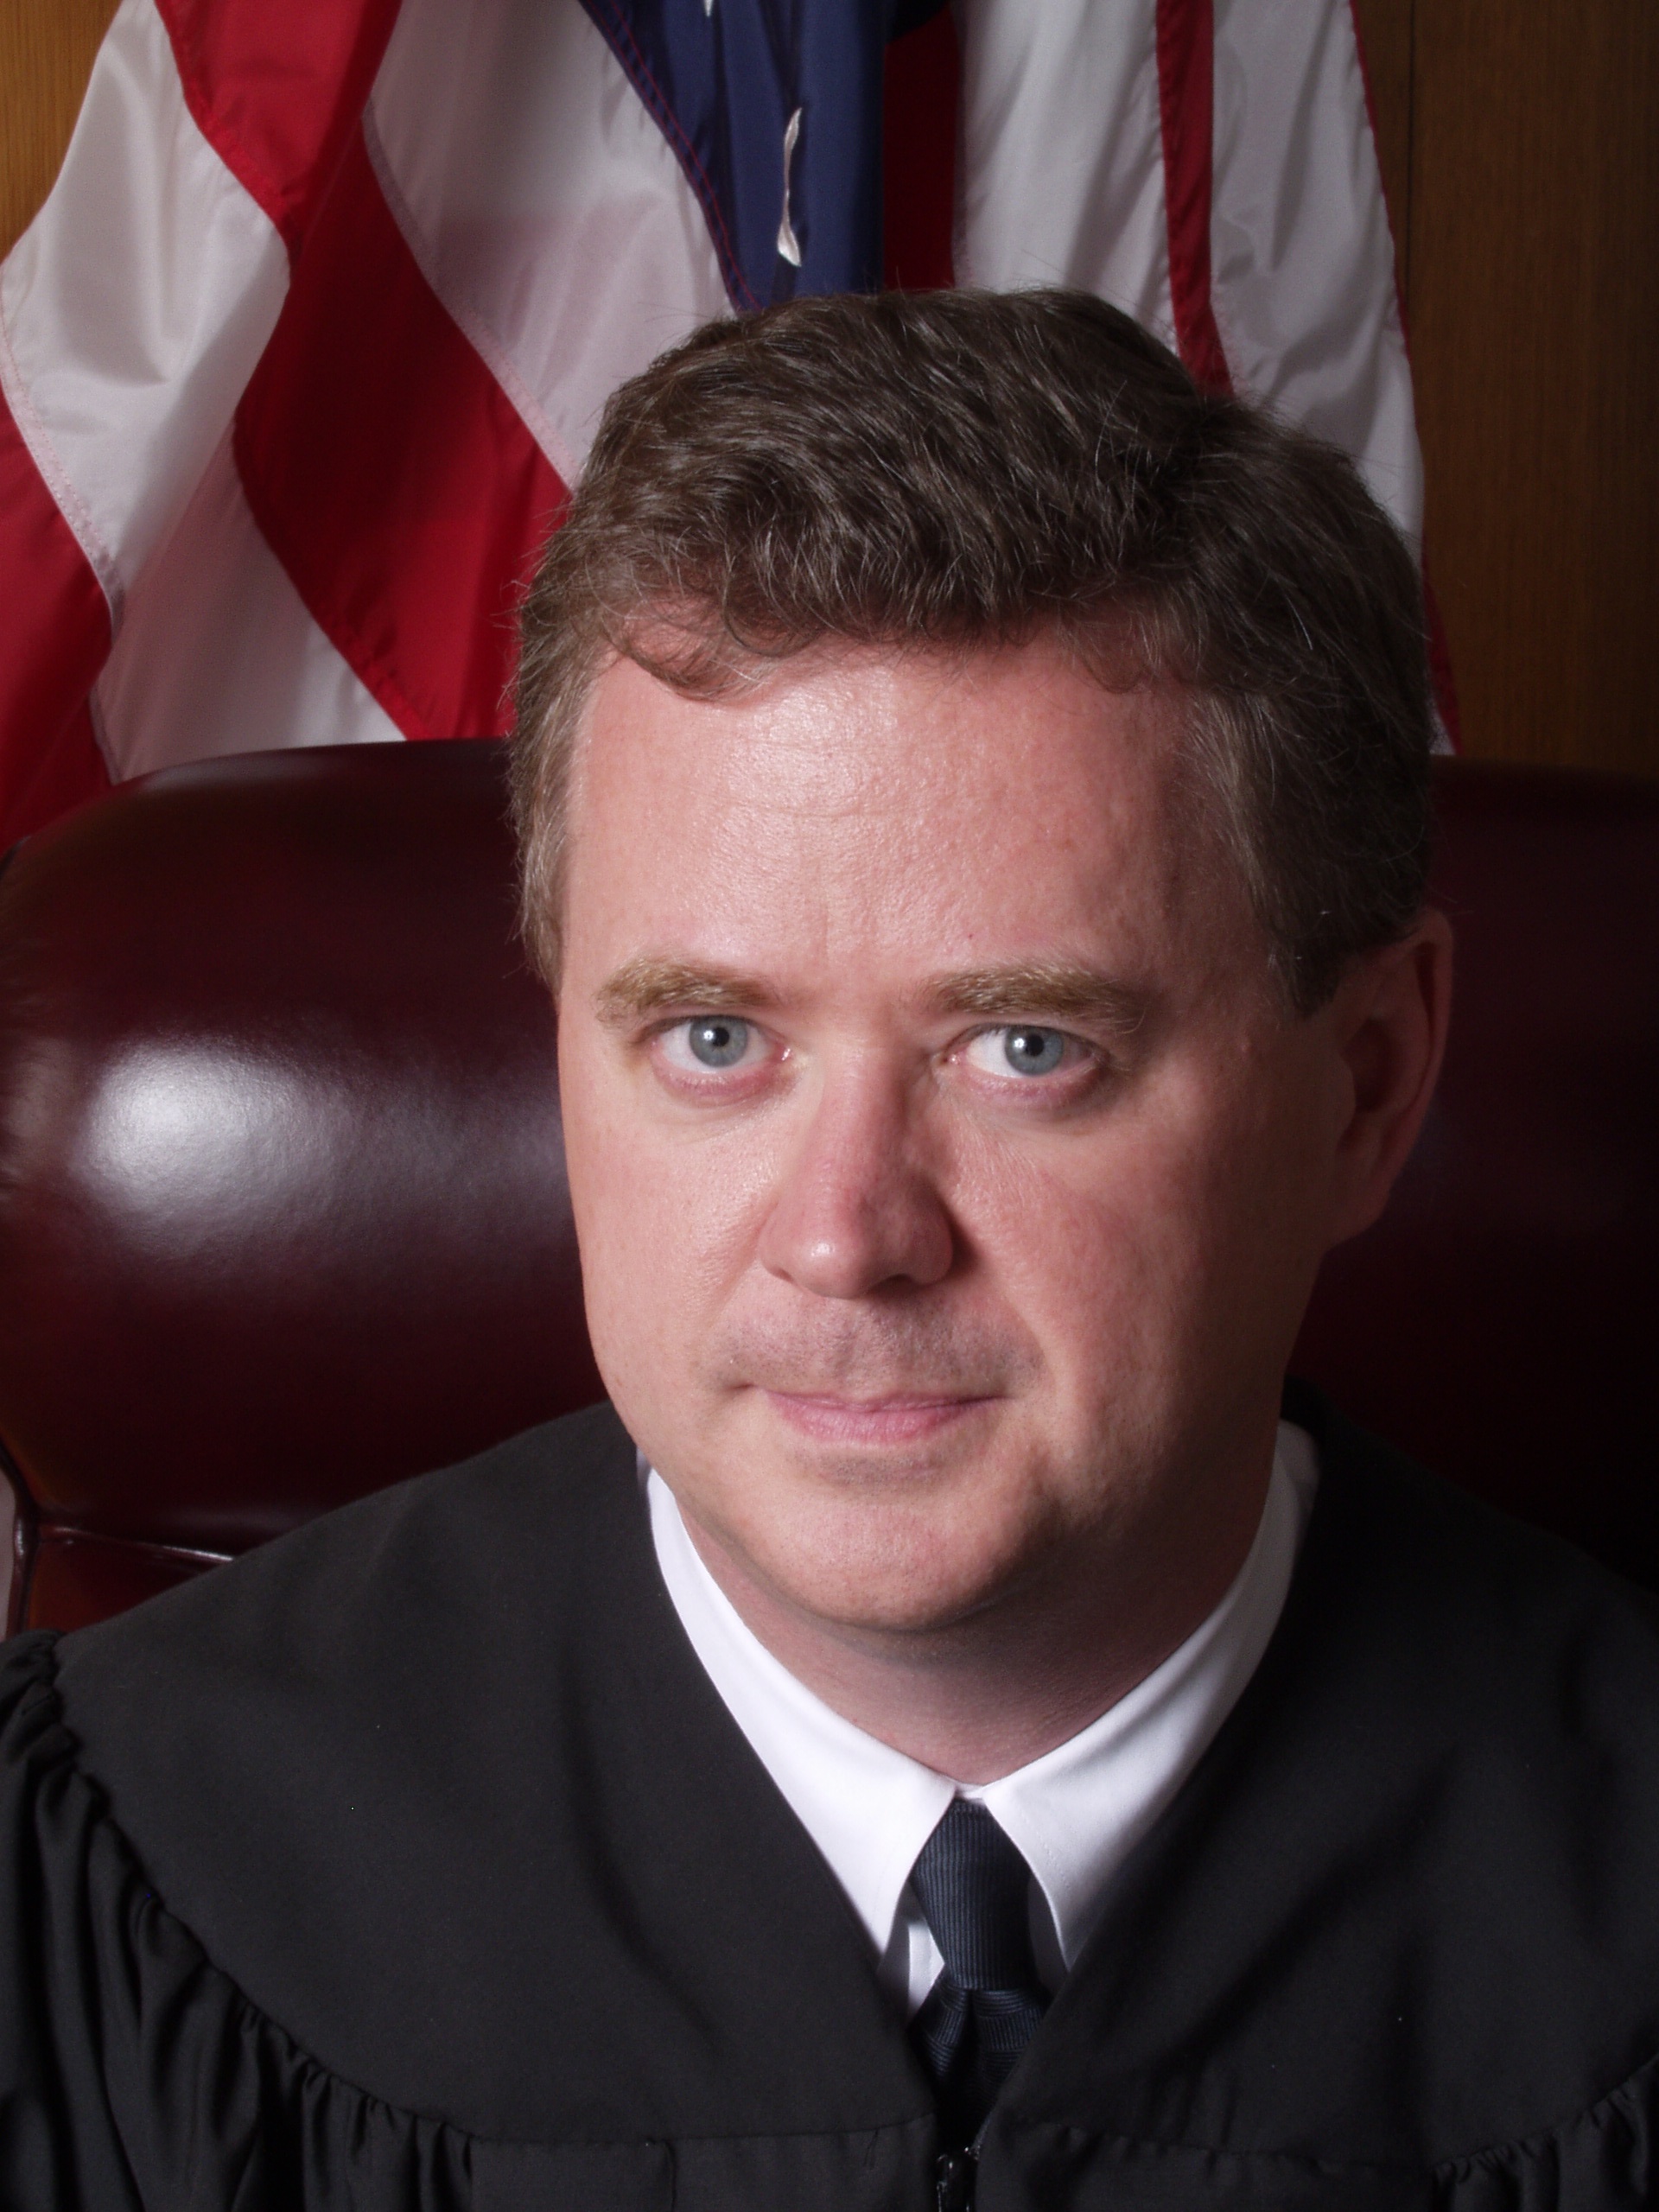 Judge Robert Drain